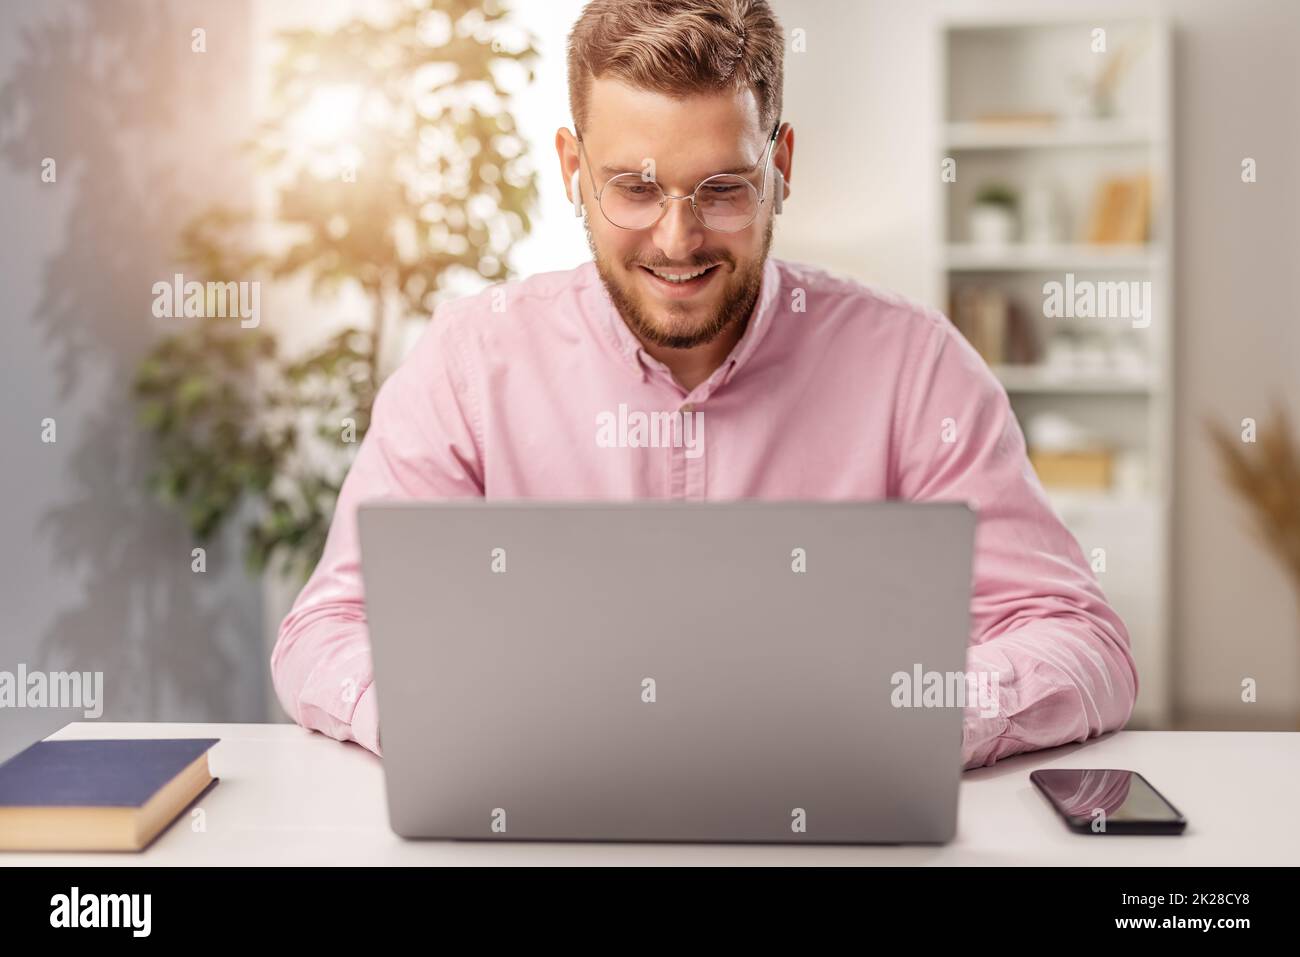 man laptop happy home Stock Photo